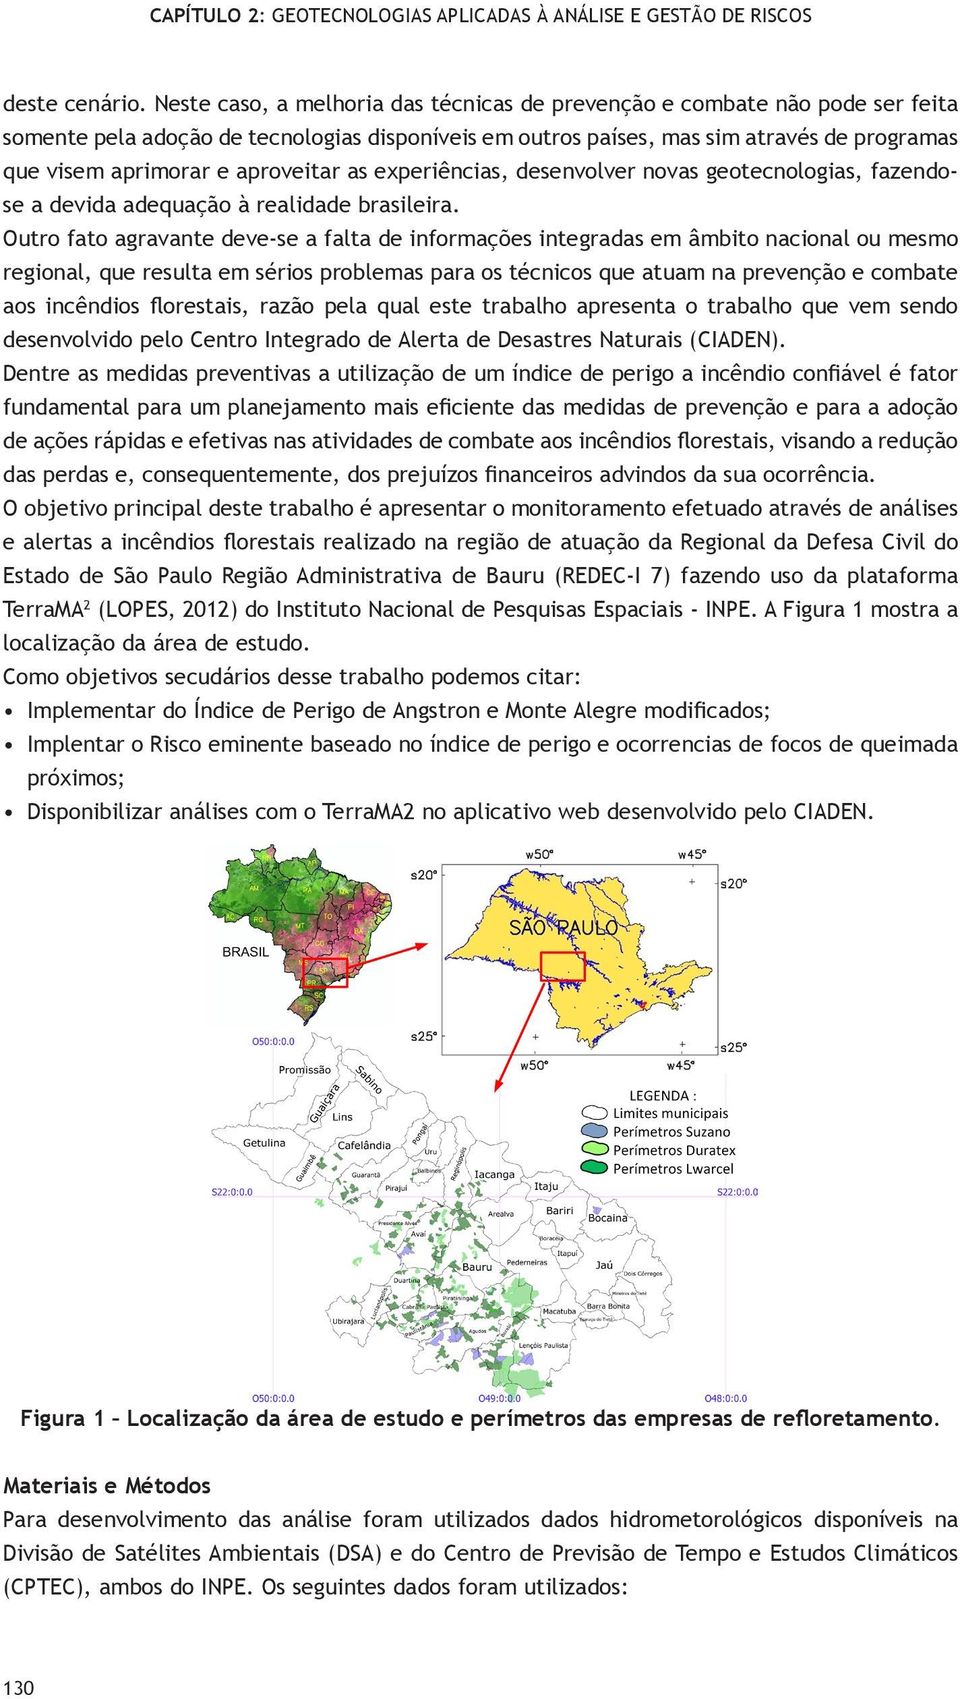 aproveitar as experiências, desenvolver novas geotecnologias, fazose a devida adequação à realidade brasileira.